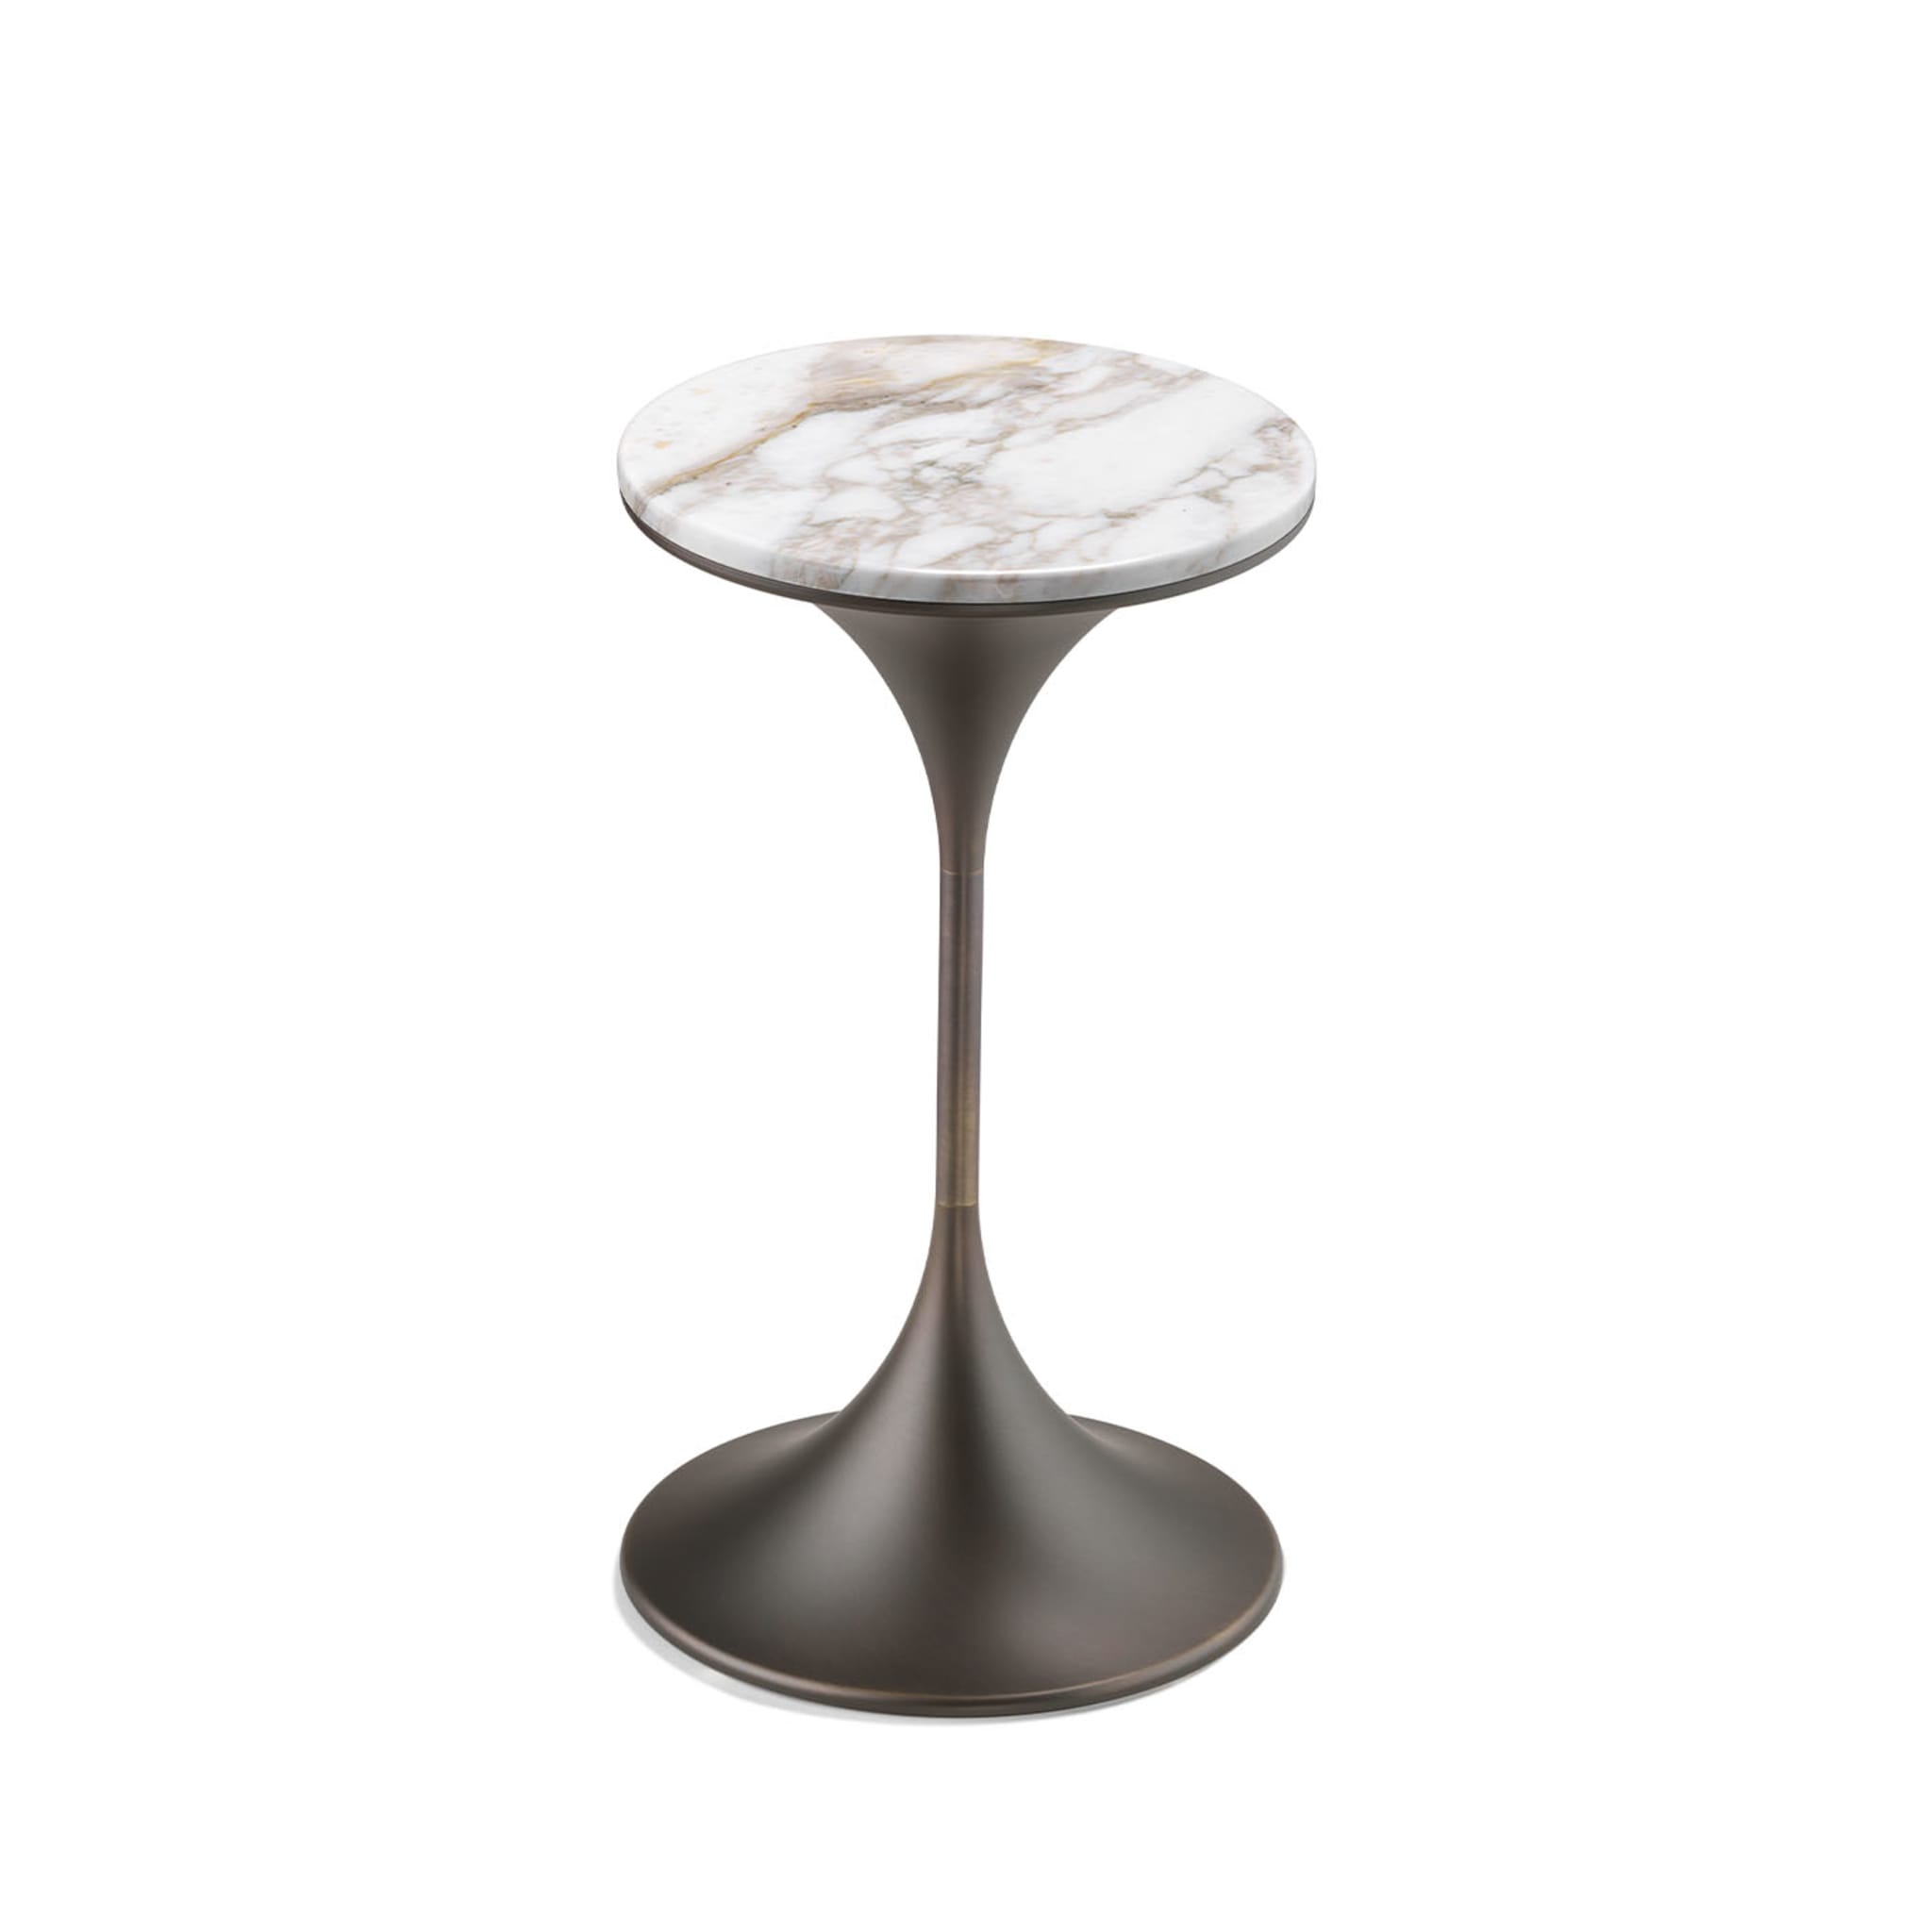 Dapertutto Tall Carrara Brown Side Table by Paolo Rizzato - Alternative view 1